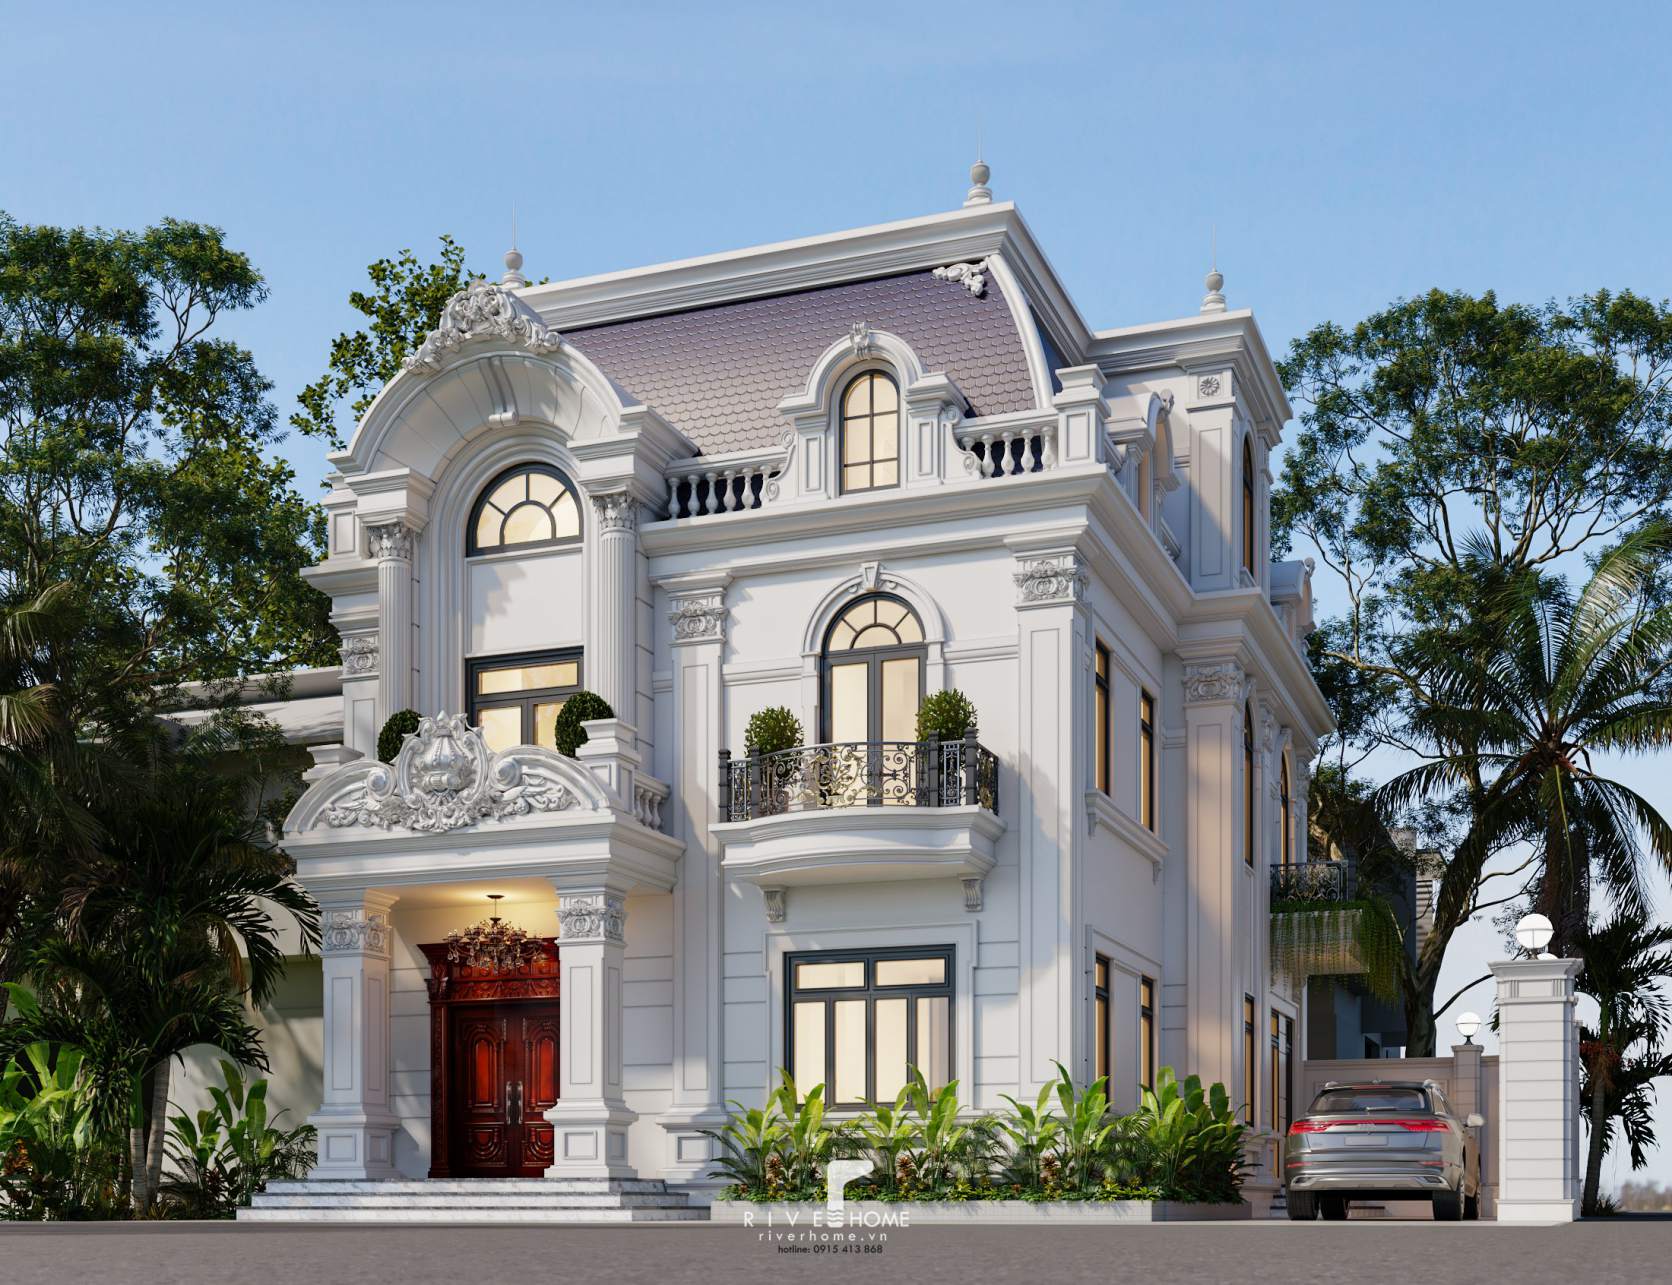 Thiết kế kiến trúc biệt thự tân cổ điển Hải Dương - Anh Phong